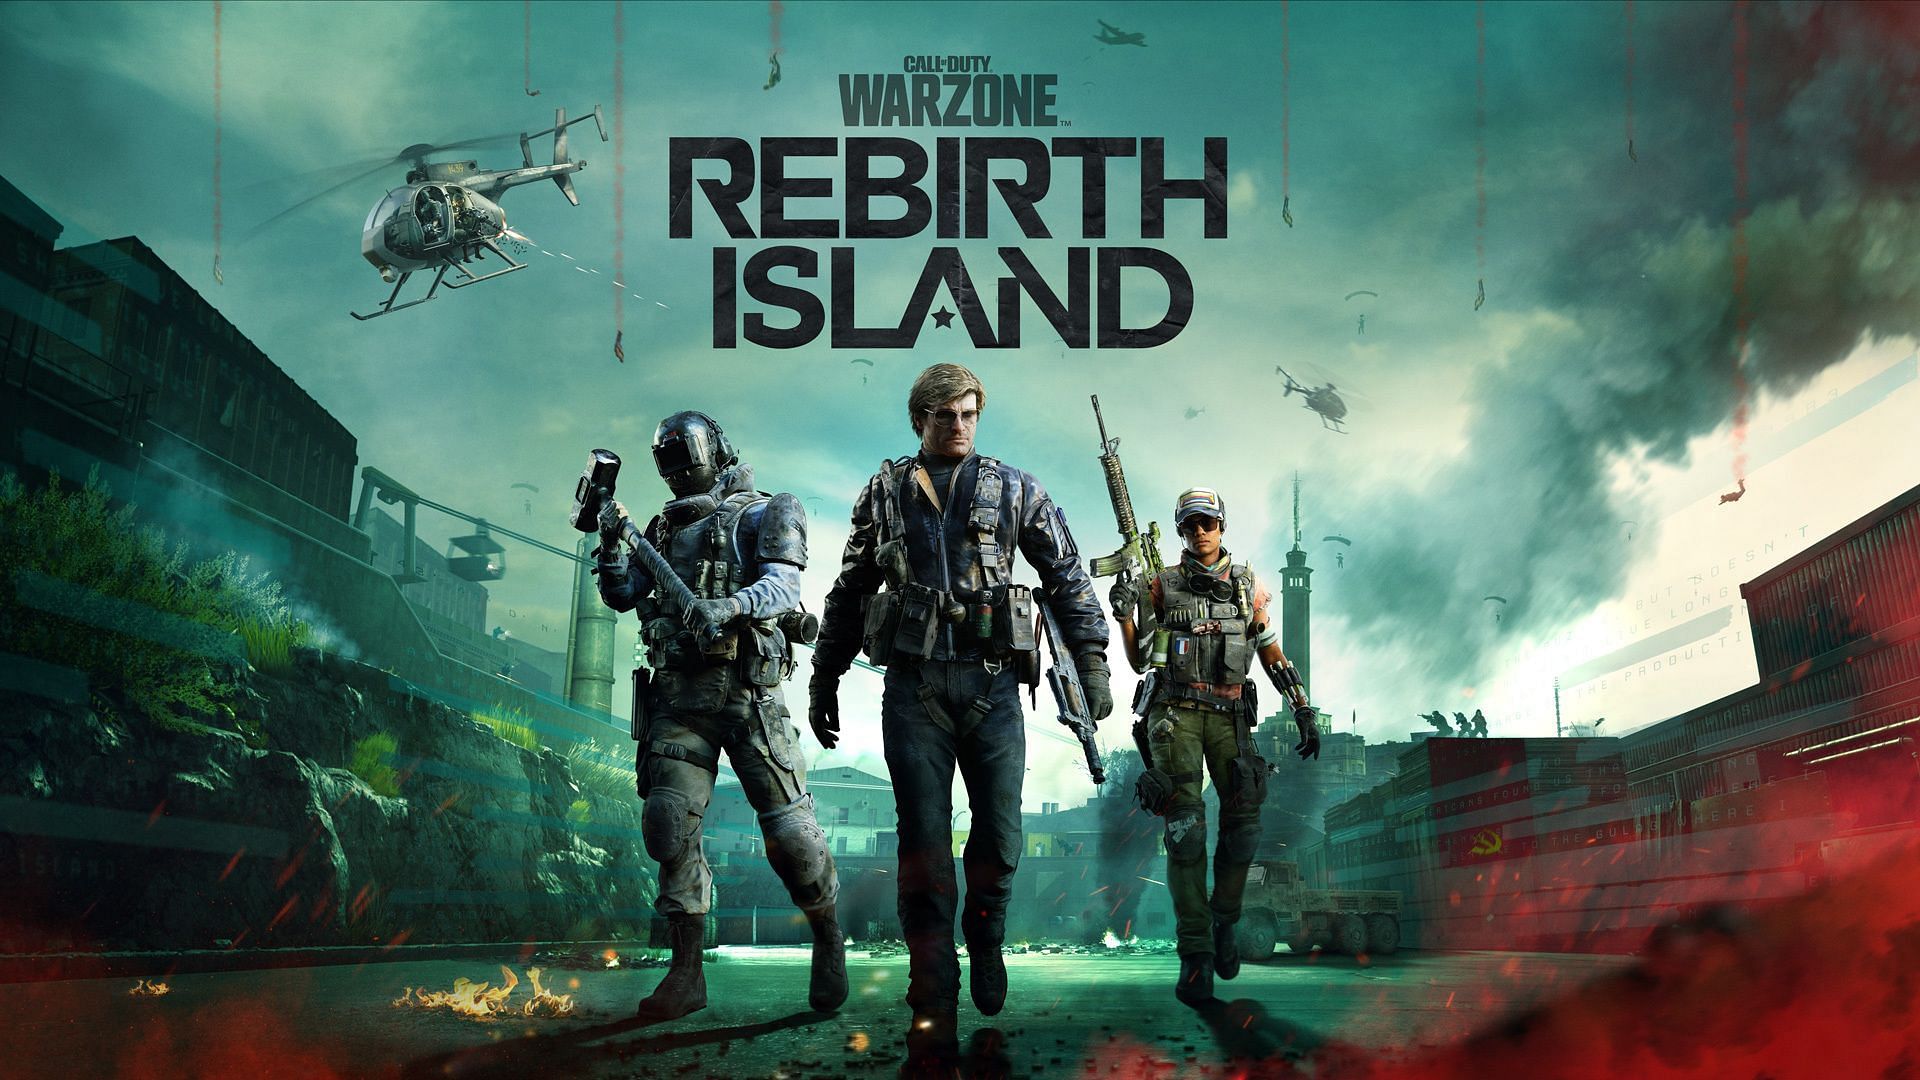 Rebirth Island in Warzone (Image via Activision)